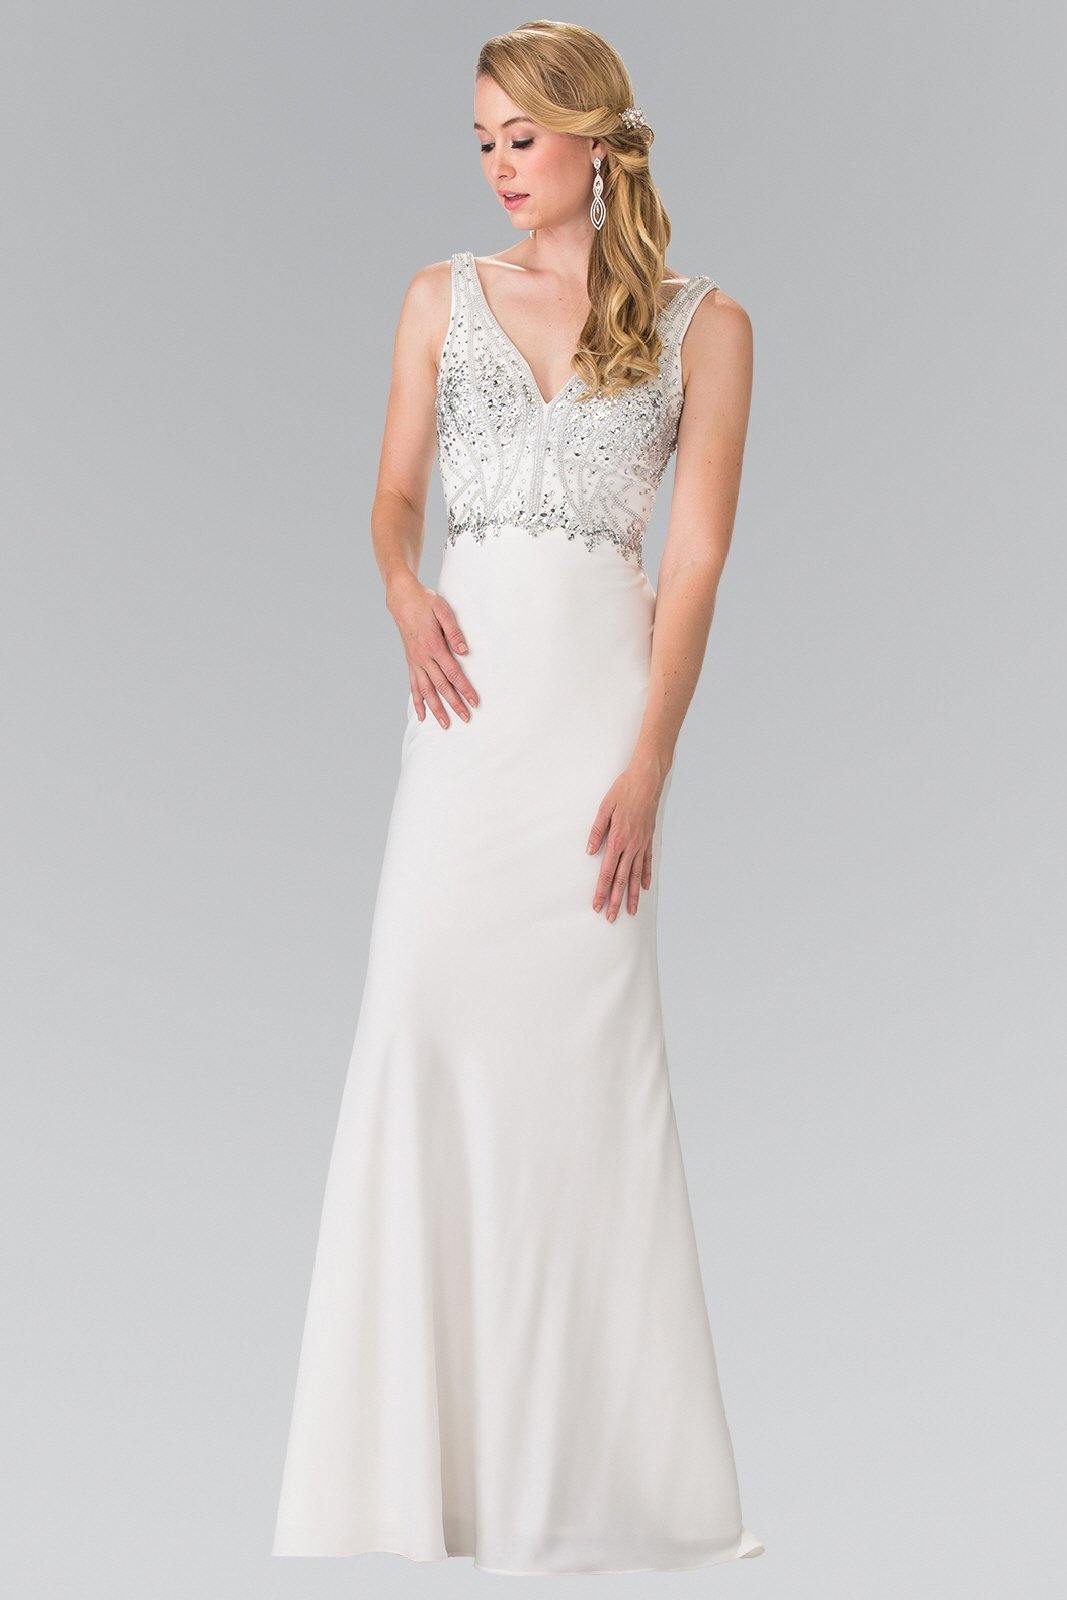 Beads and Jewels Embellished Wedding Long Dress - The Dress Outlet Elizabeth K